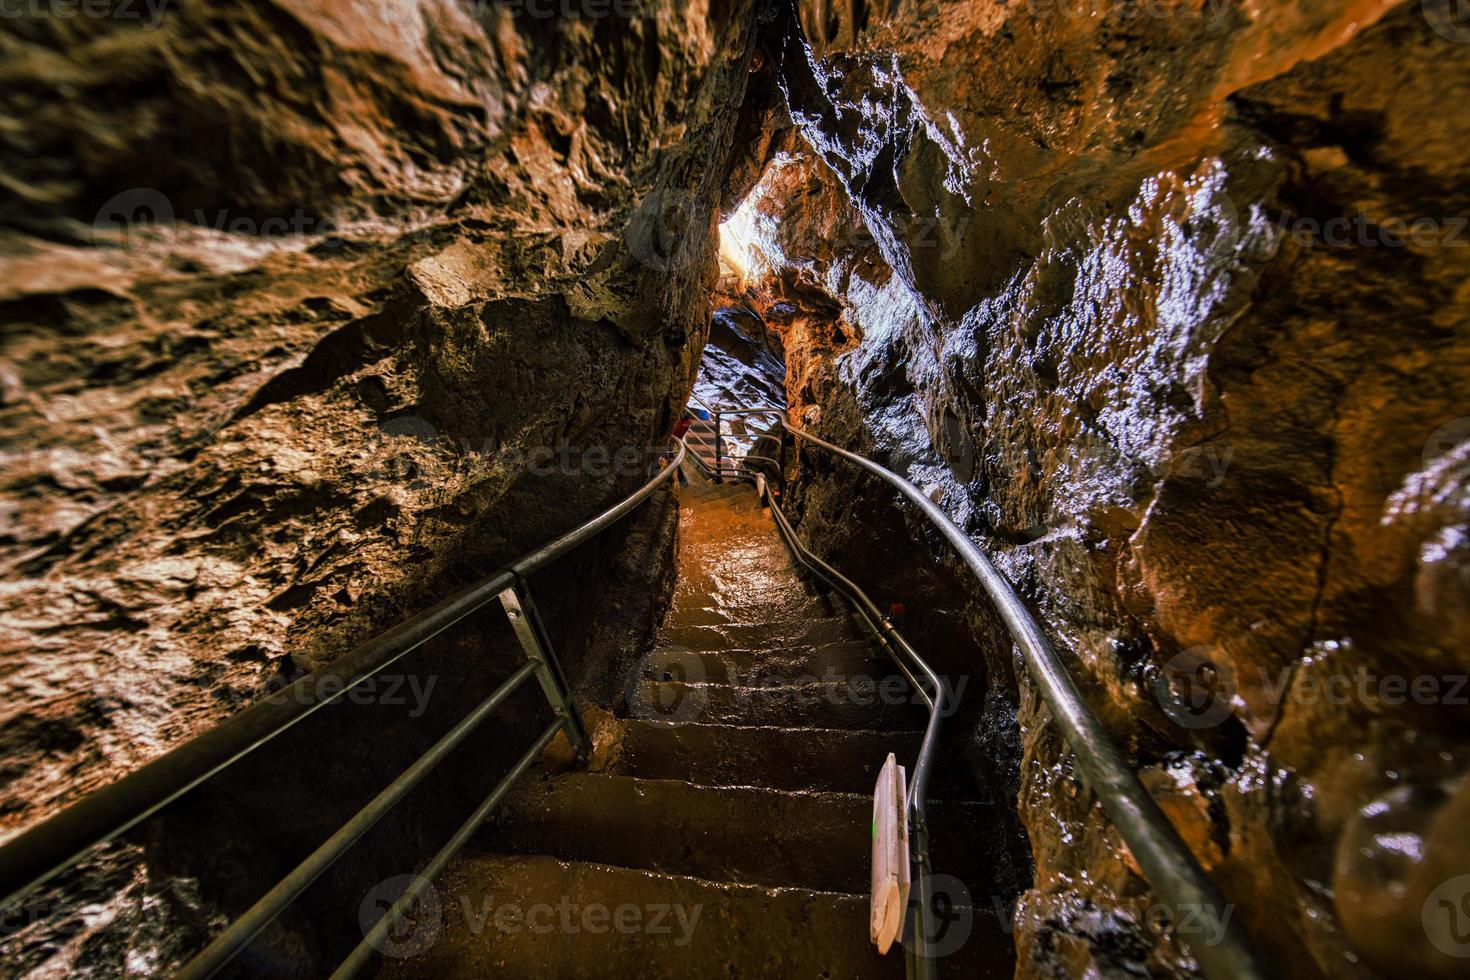 speläologische Besuche in Kalksteinhöhlen in den italienischen Ausläufern foto